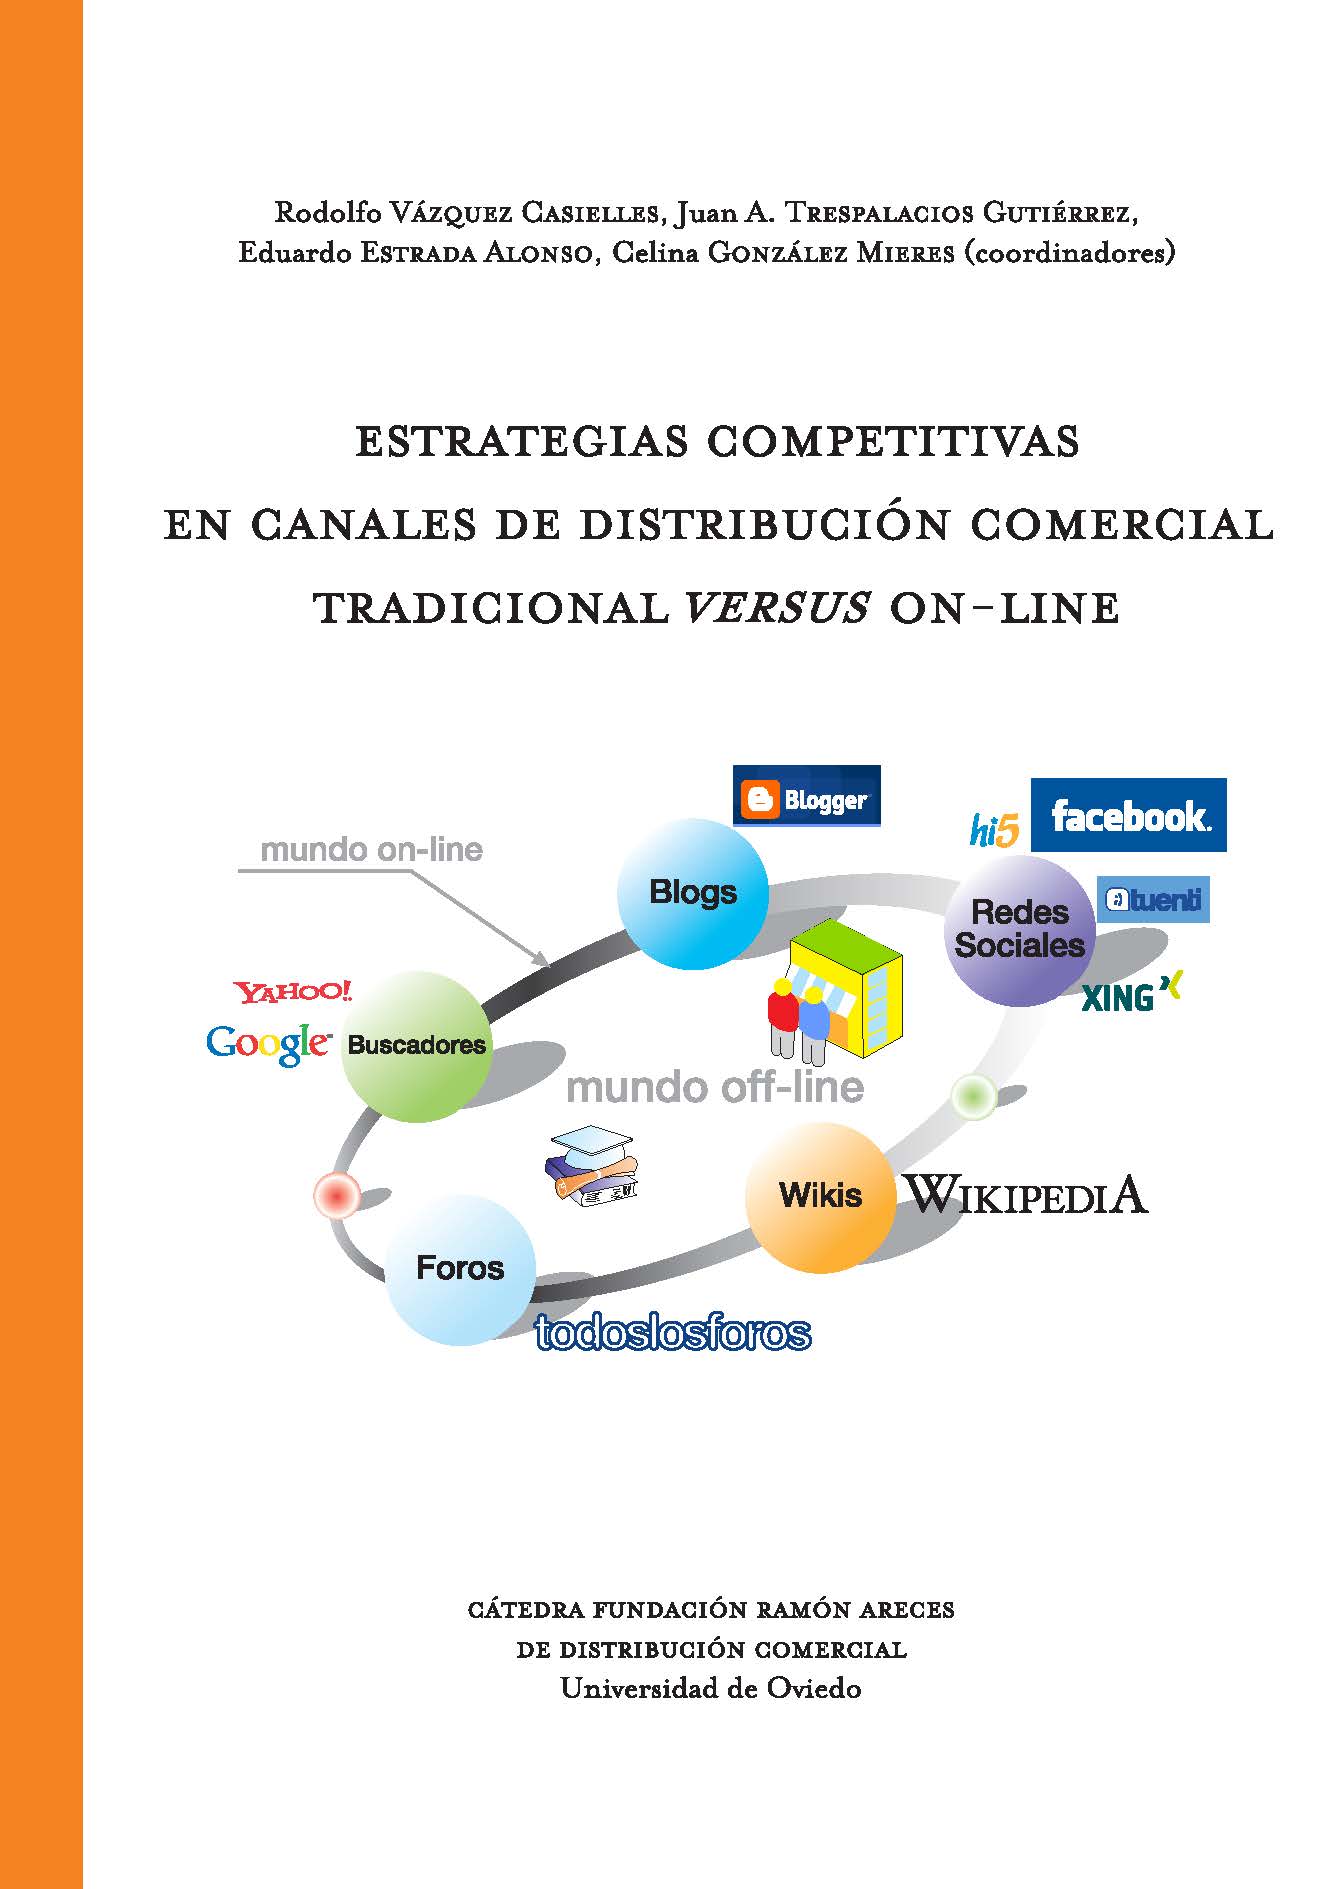 Imagen de portada del libro Estrategias competitivas en canales de distribución comercial tradicional "versus" on-line